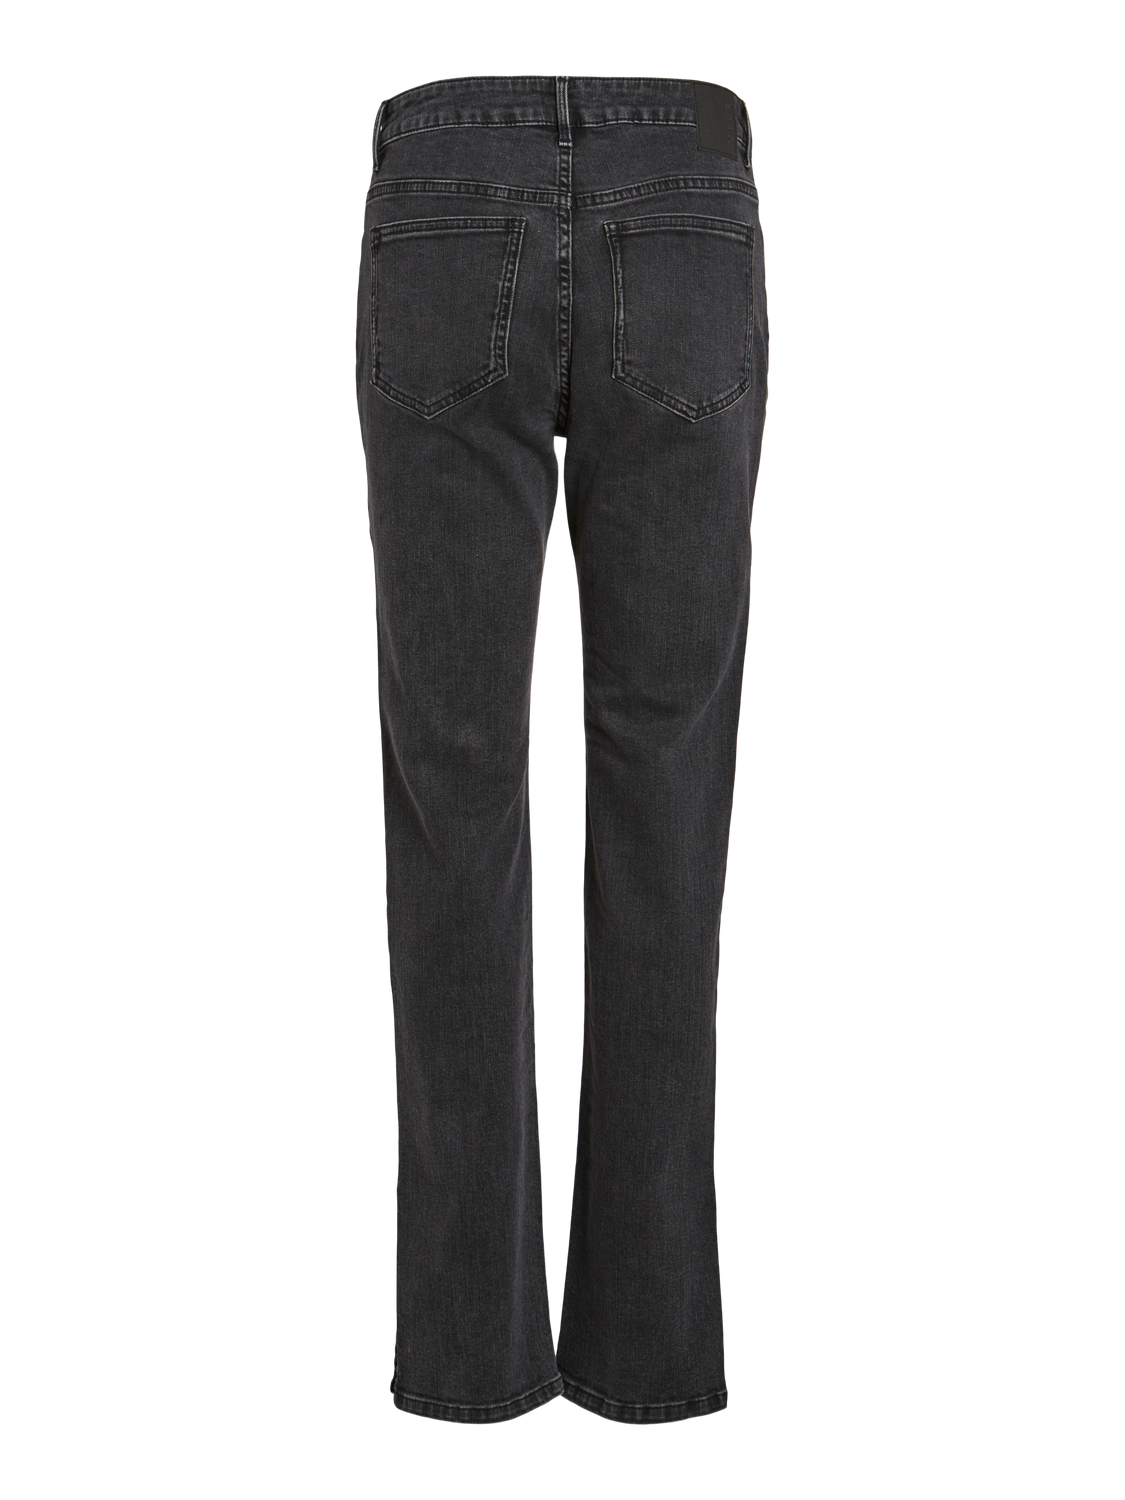 VIALICE Jeans - Black Denim